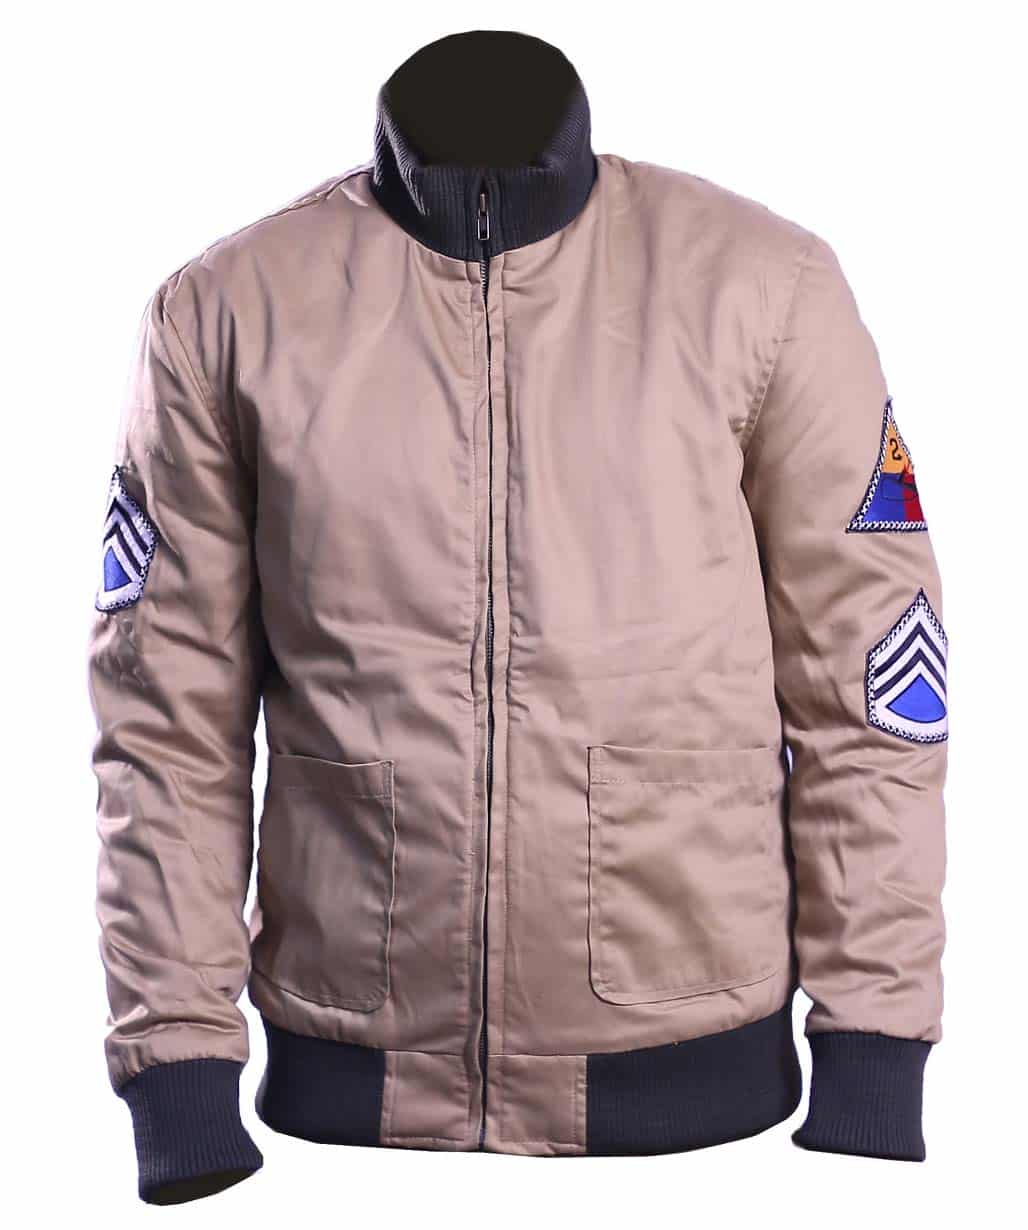 brad-pitt-fury-wardaddy-ww2-military-jacket